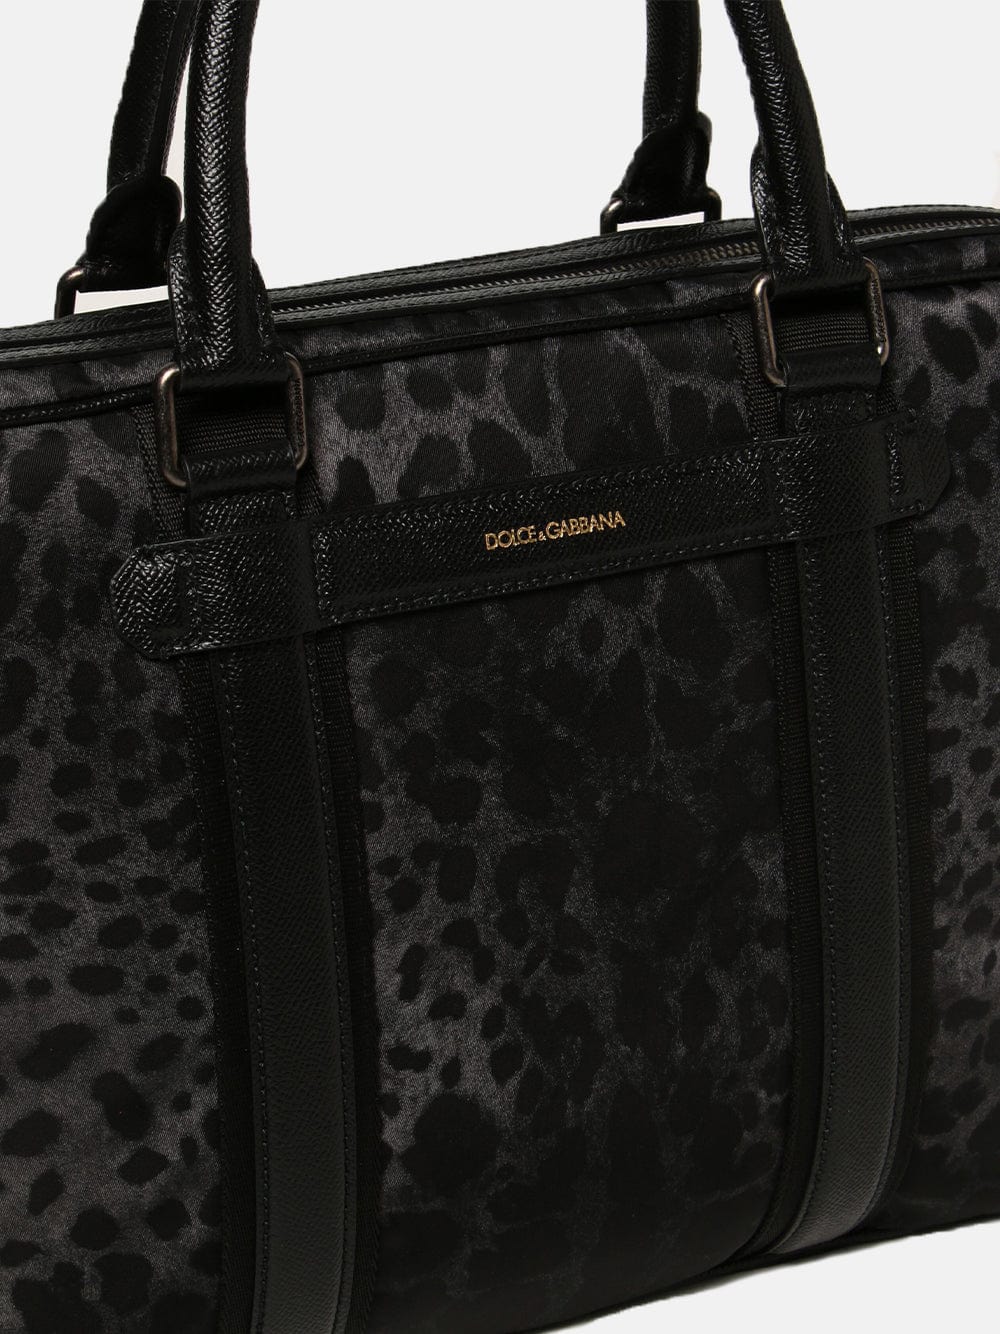 Dolce & Gabbana Leopard-Print Shoulder Bag